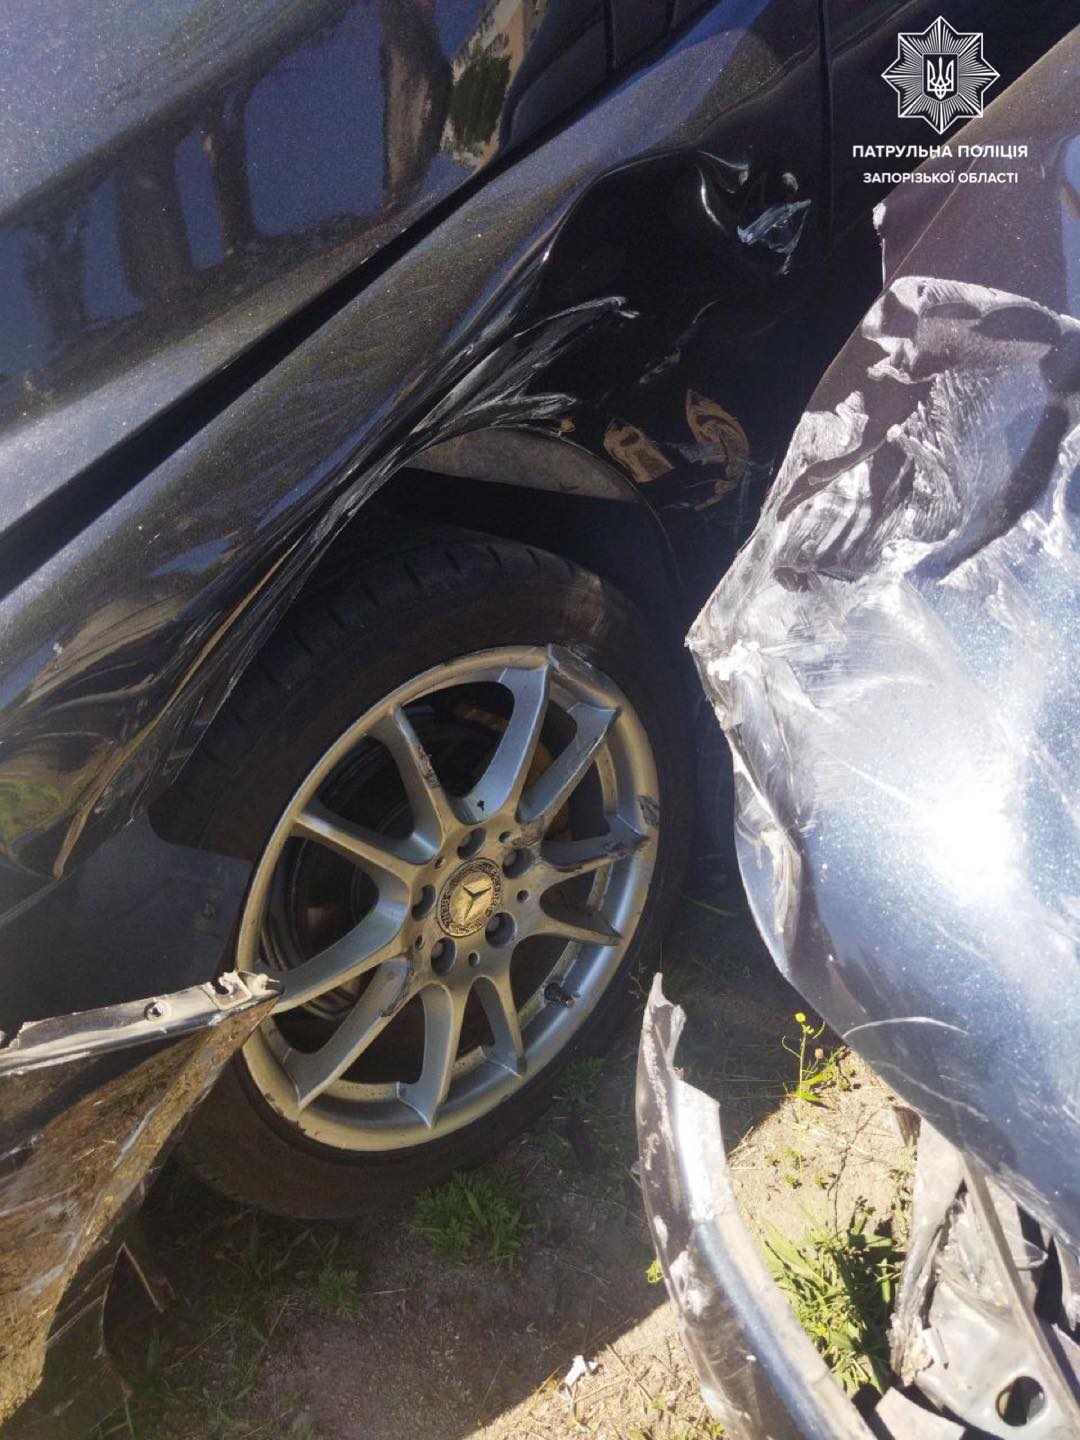 В Запорожье водитель под влиянием наркотиков попал в аварию (Фото)2)